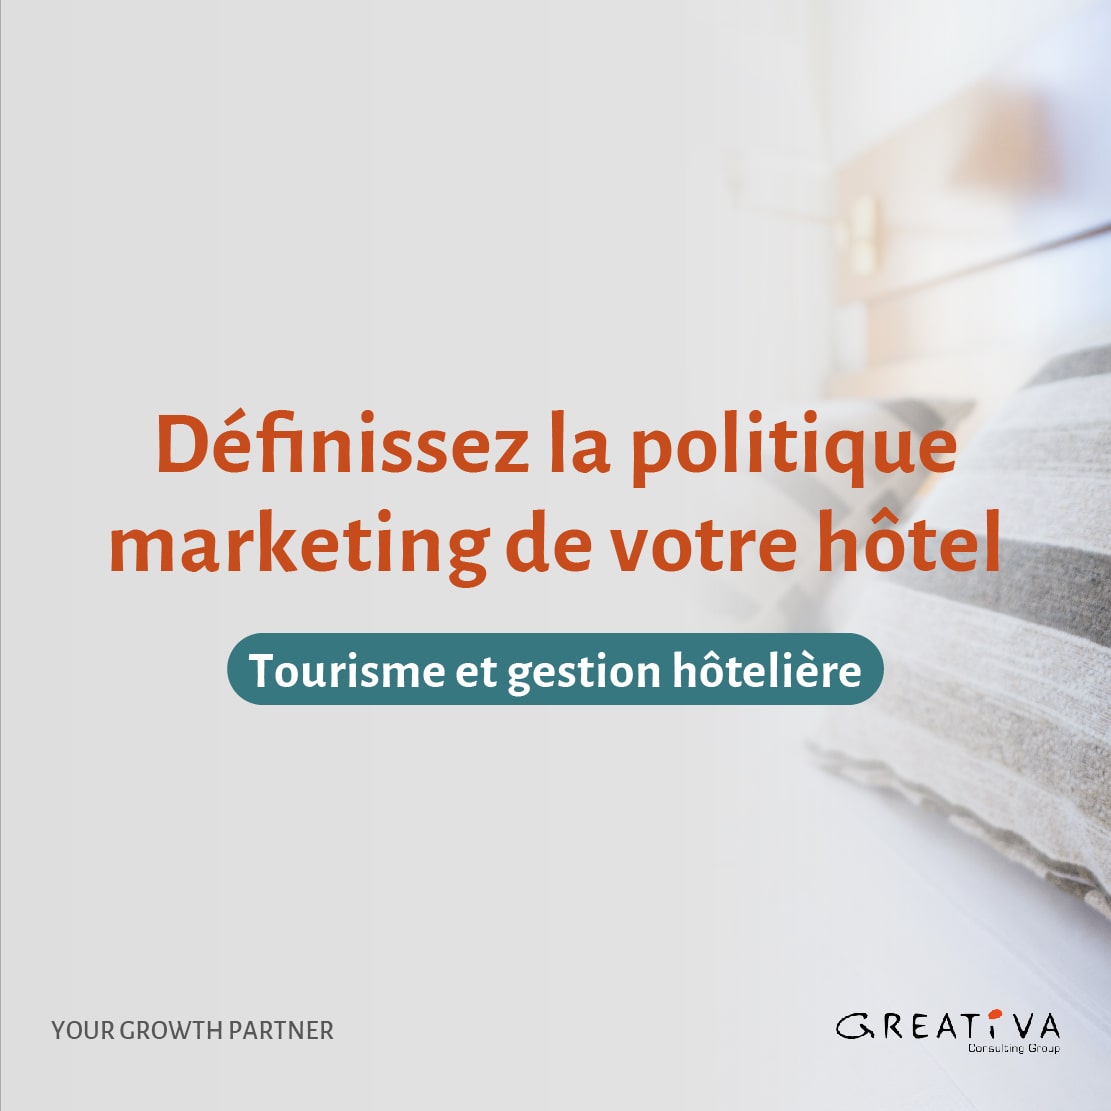 Définissez la politique marketing de votre hôtel